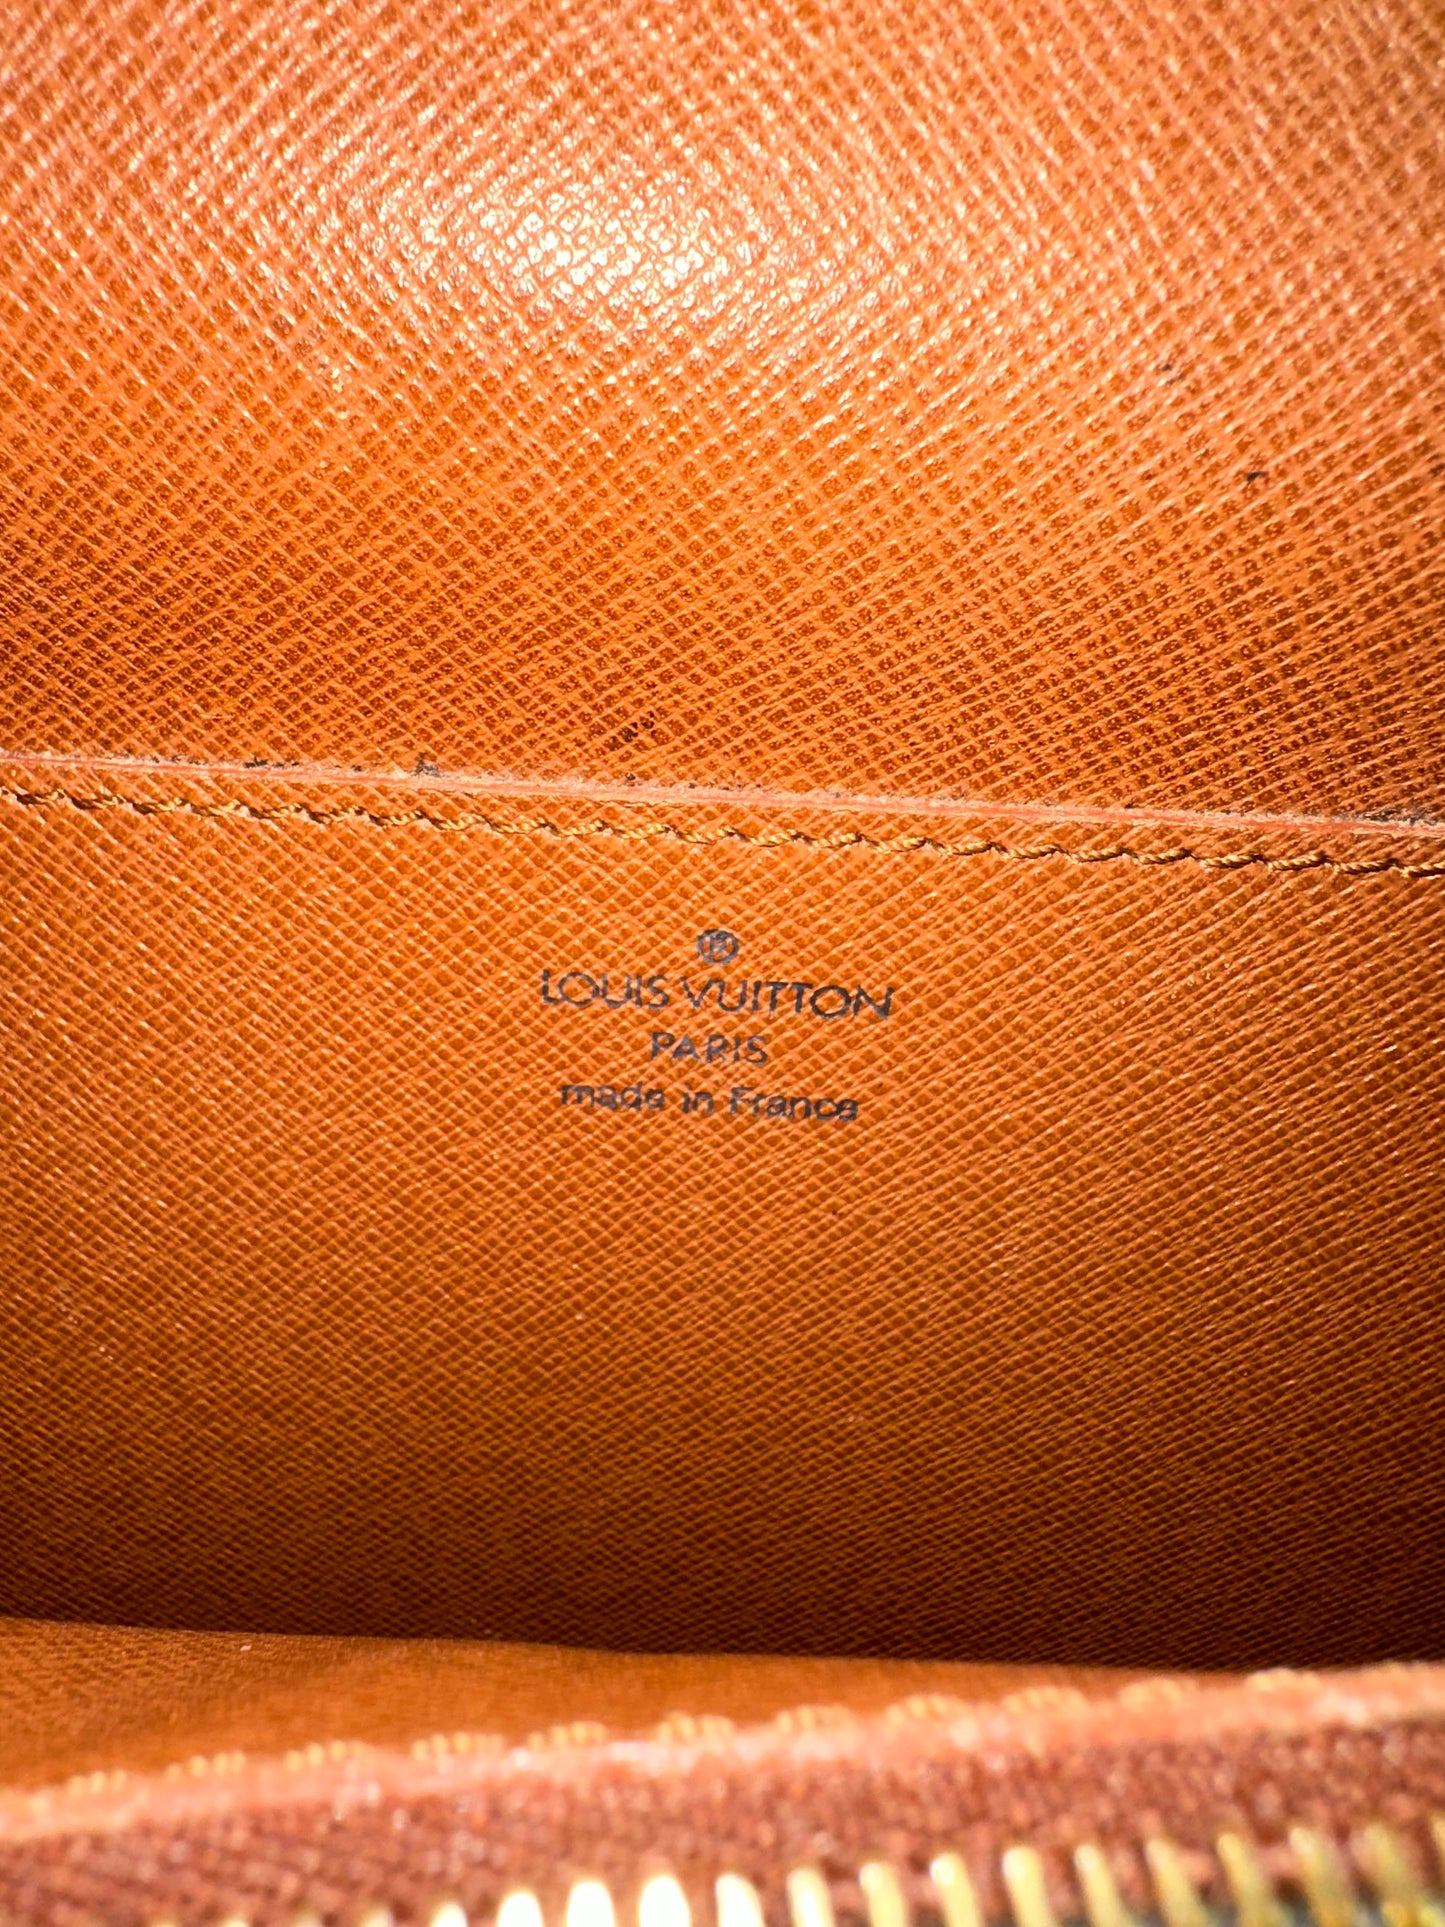 Pre-owned Authentic Louis Vuitton Monogram Porte Documents / Laptop Handbag